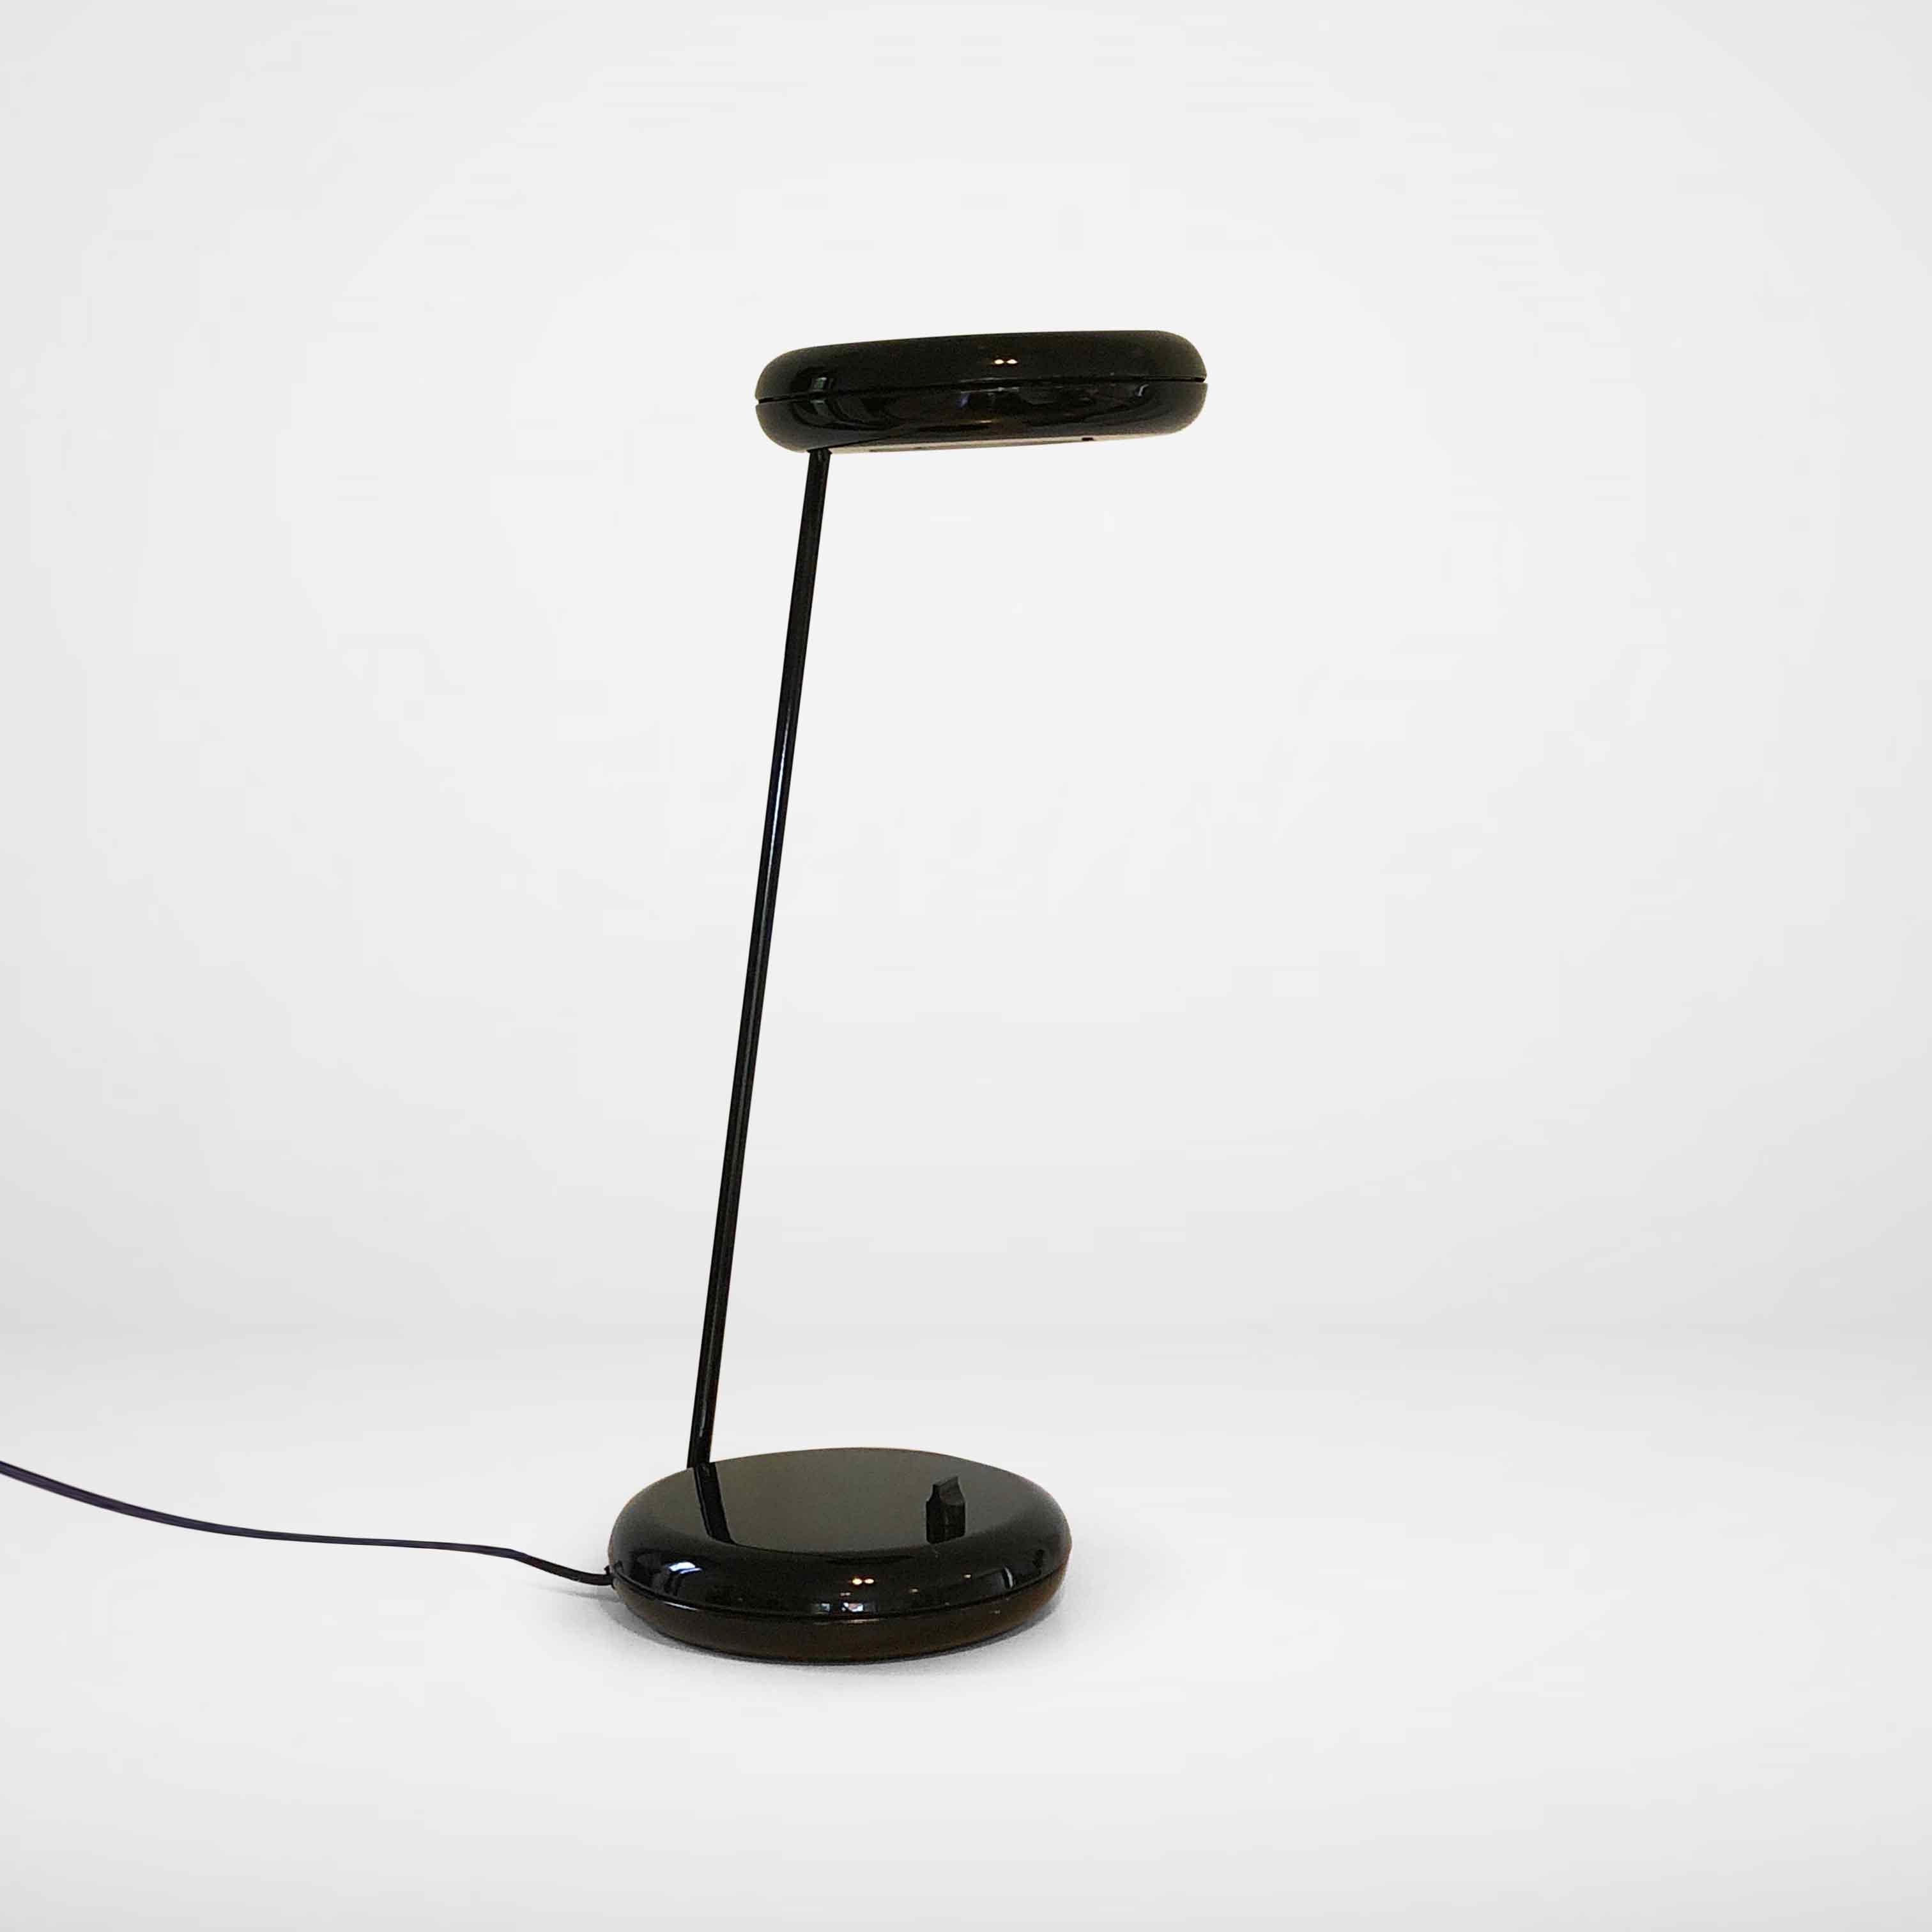 Schwarze Schreibtischlampe im Stil von Bruno Gecchelin. Der Arm und der Schirm können in verschiedene Positionen gedreht werden, so dass Sie immer optimales Licht genießen können. Da die Lampe dimmbar ist, können Sie sie als Stimmungslicht oder